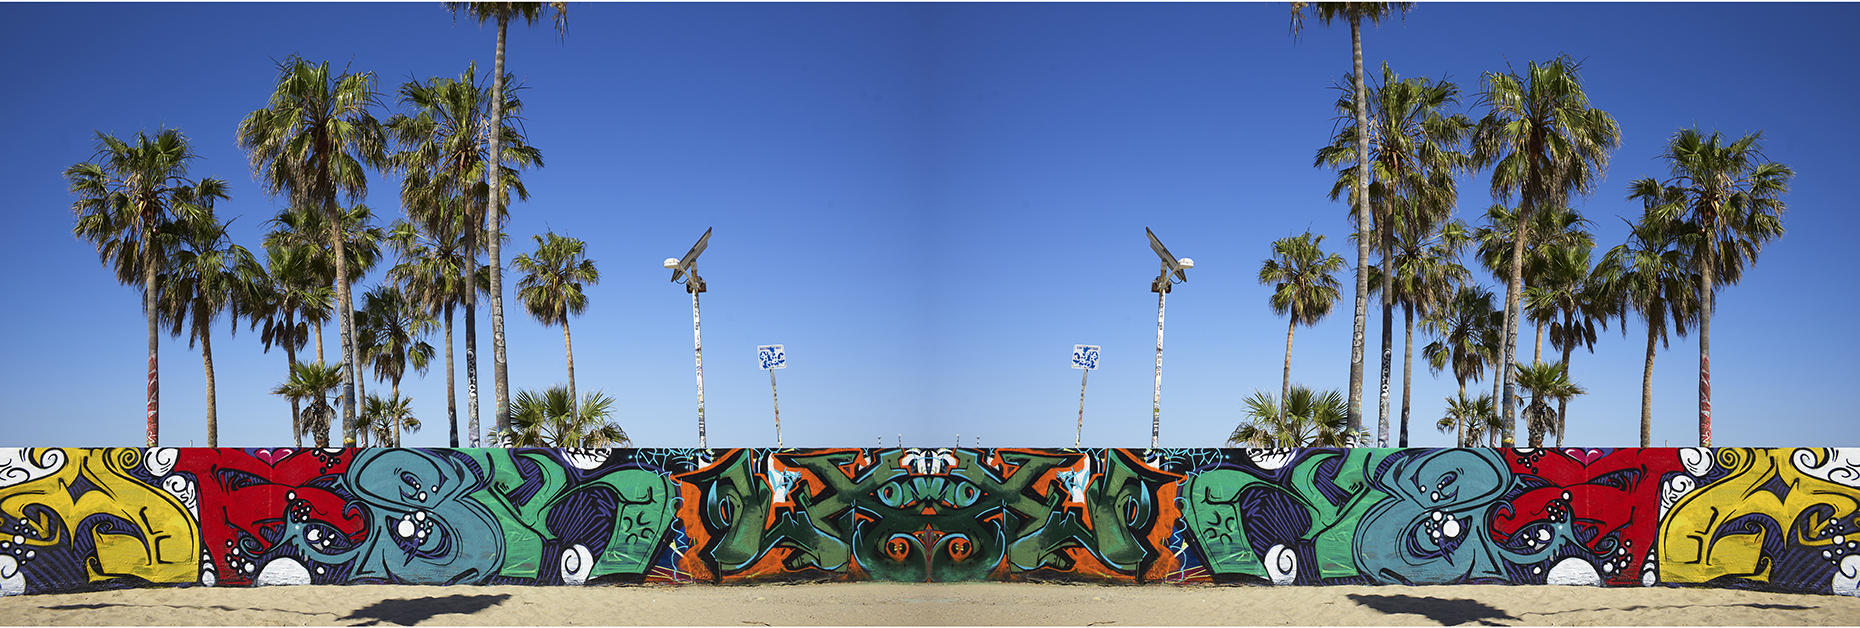 Graffiti_I_LA_smallweb